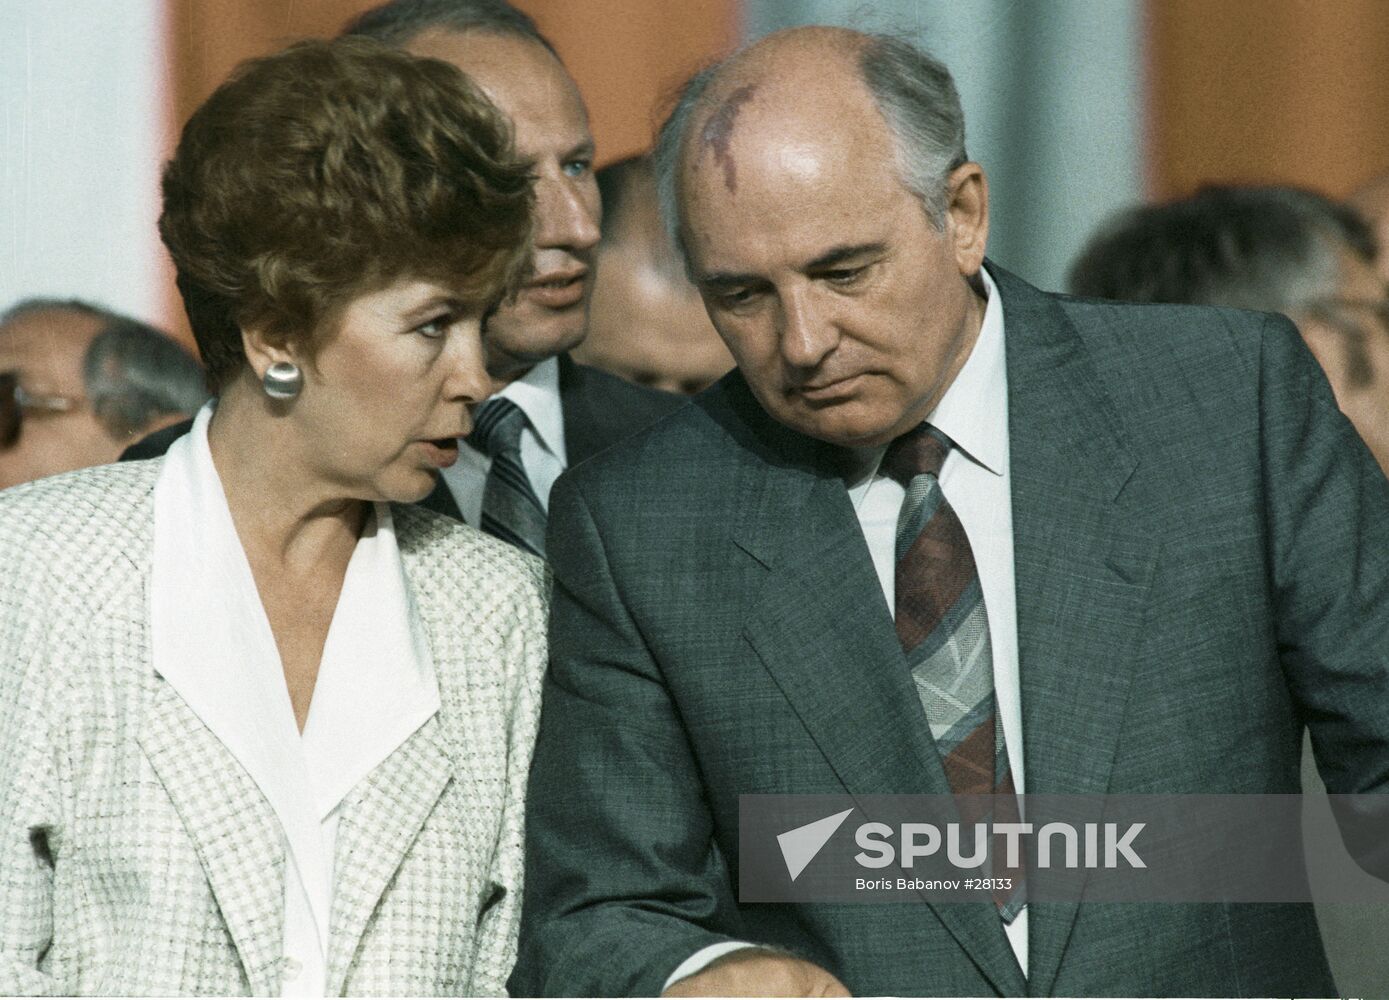 Gorbachev spouse